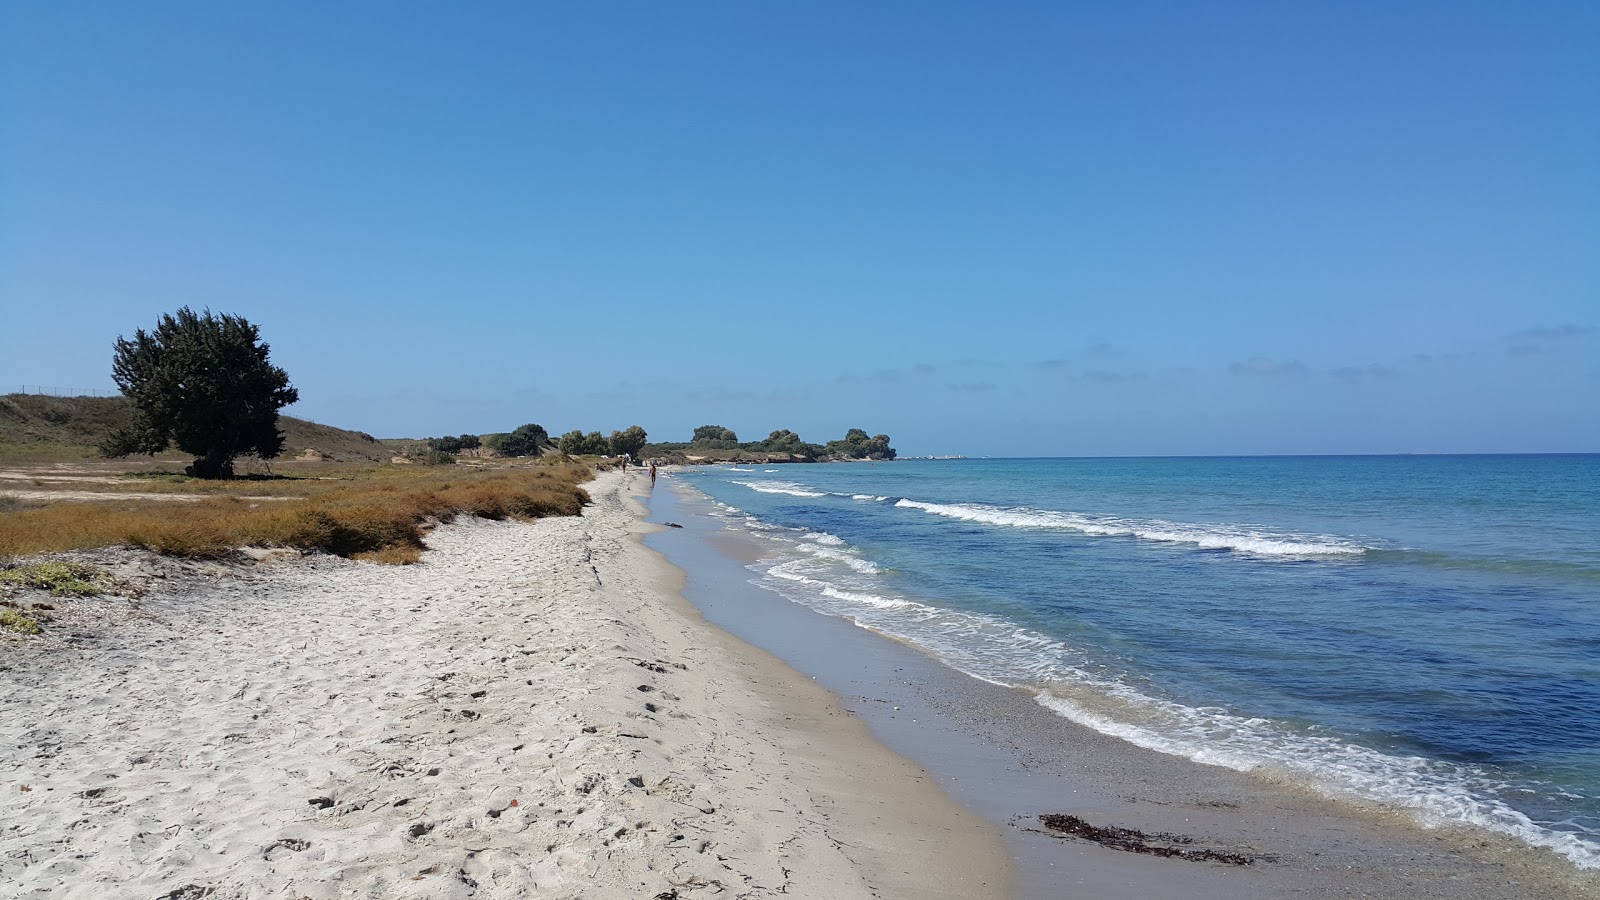 Troulos beach'in fotoğrafı parlak kum yüzey ile